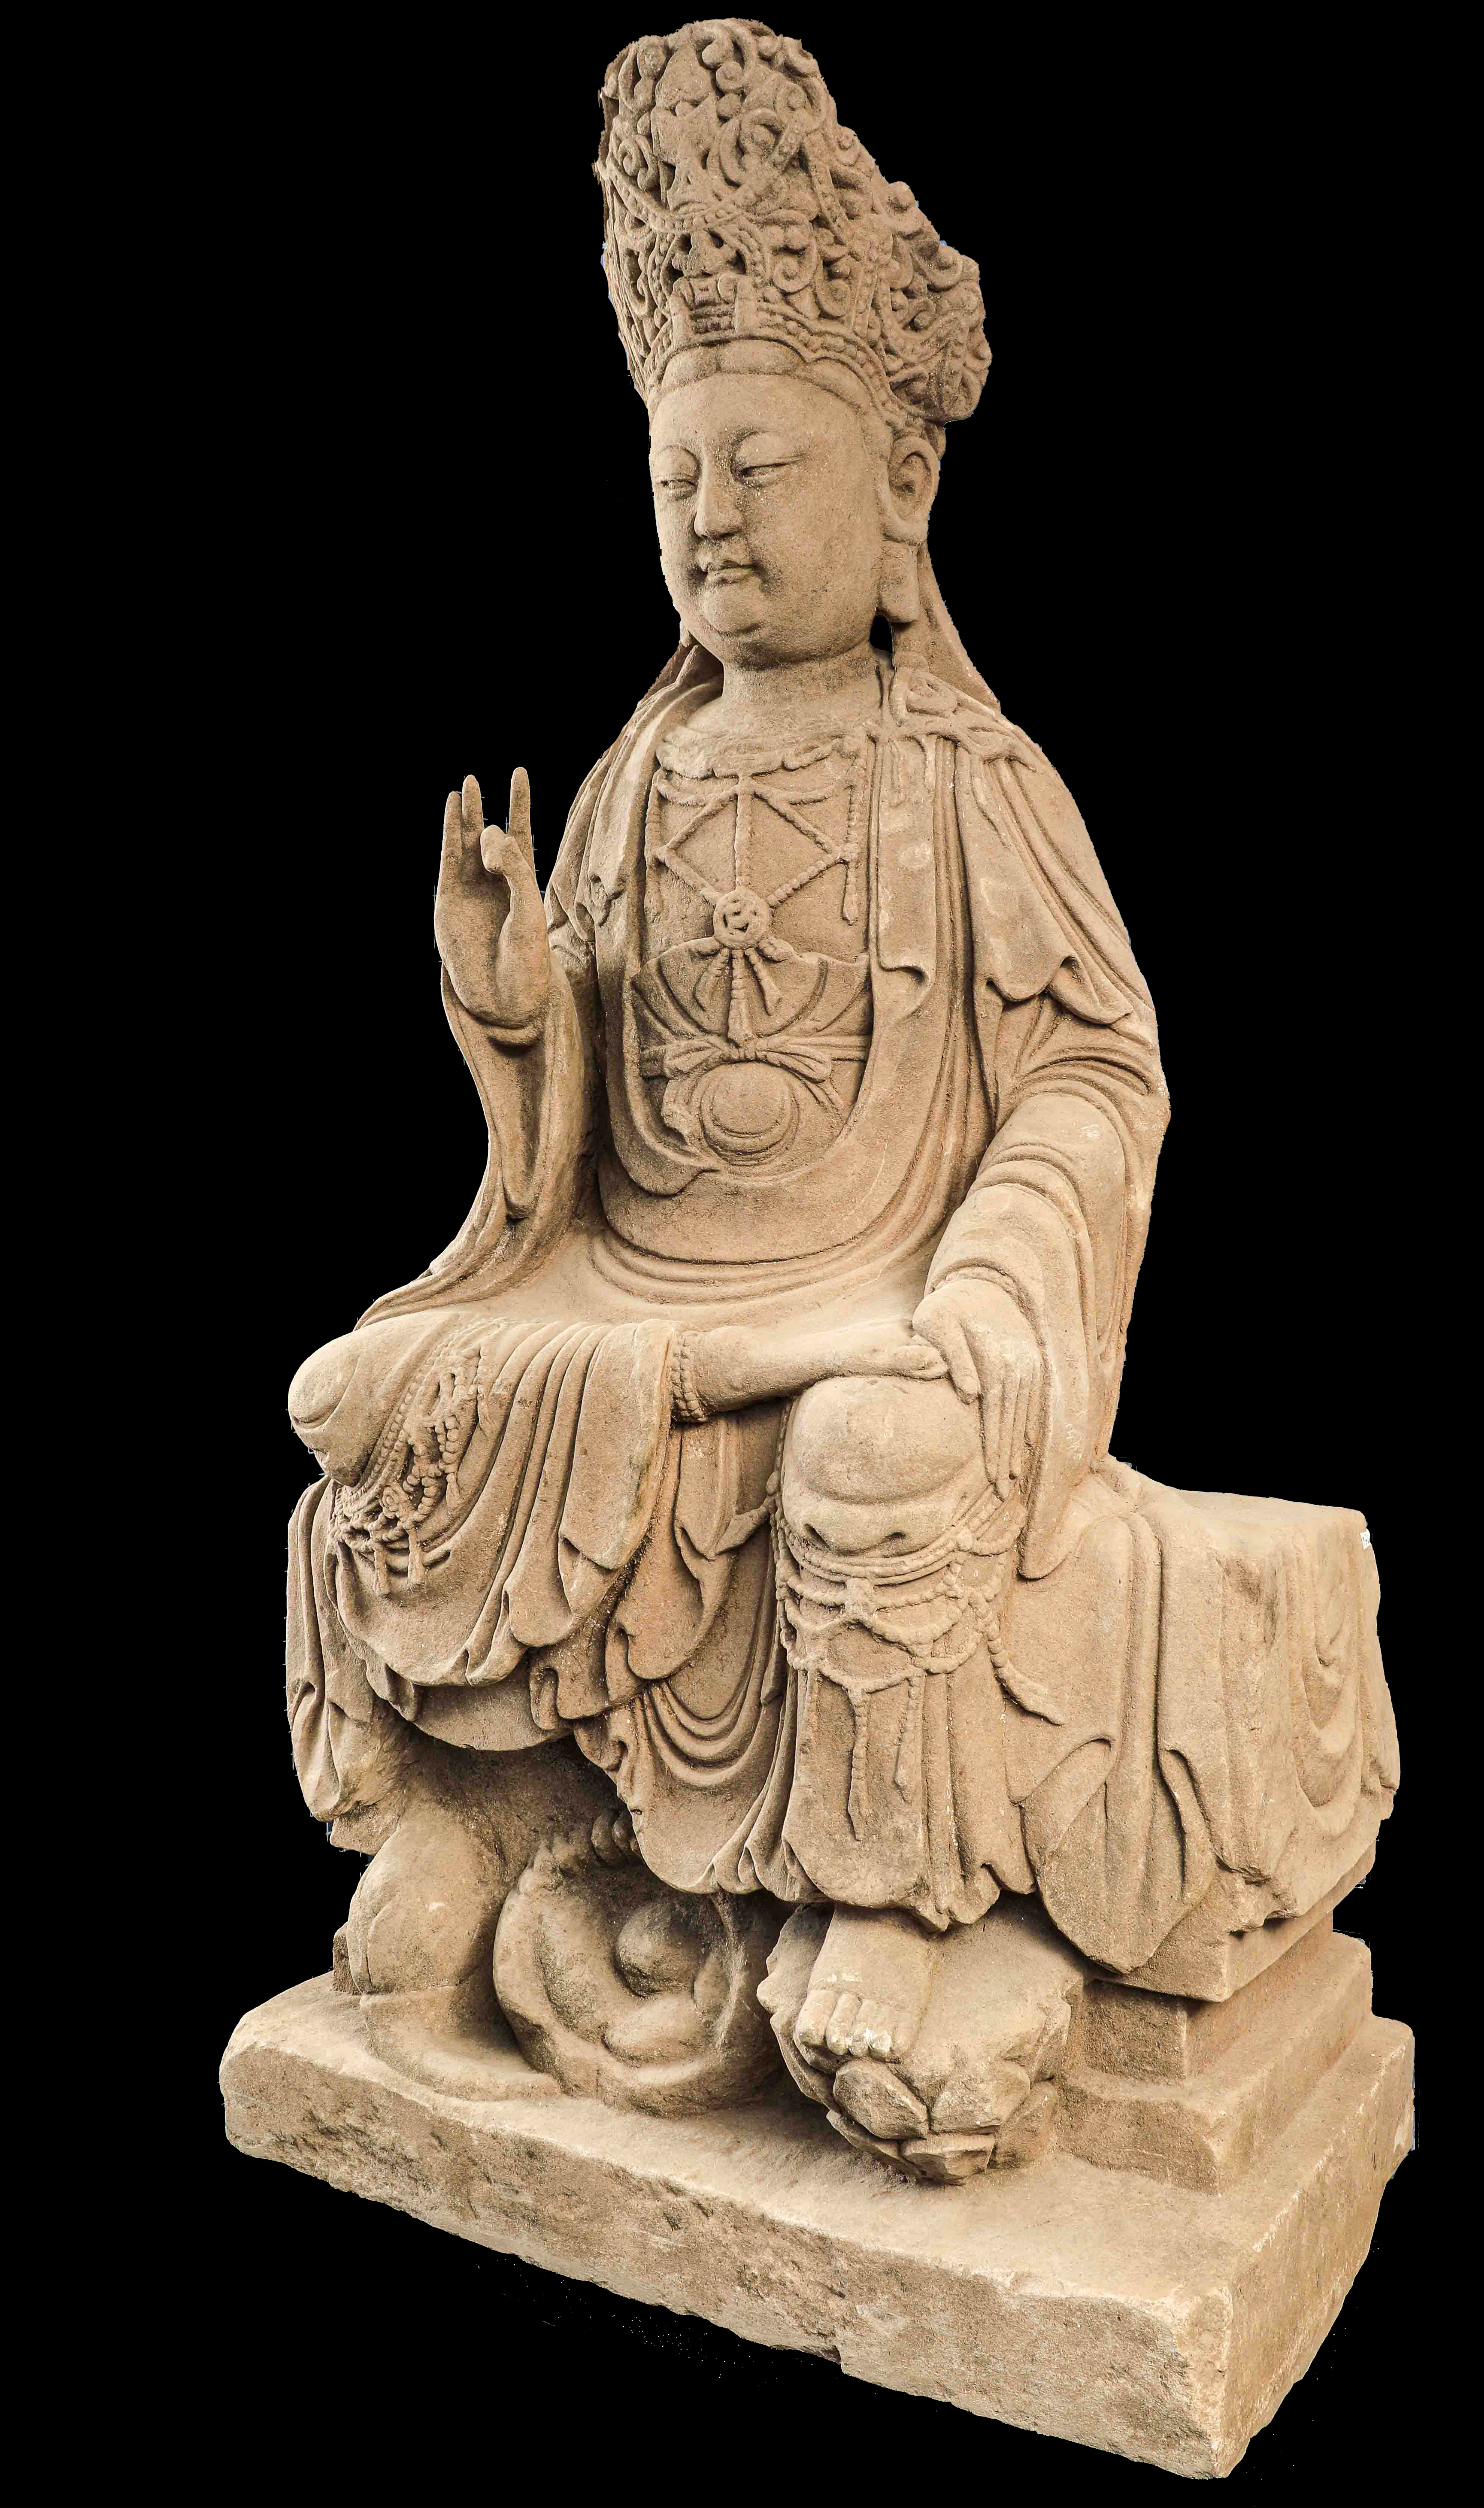 Le Boddhisattva Kwan yin assis en déplacement à l’européenne , vêtu de la robe monastique - Image 2 of 2